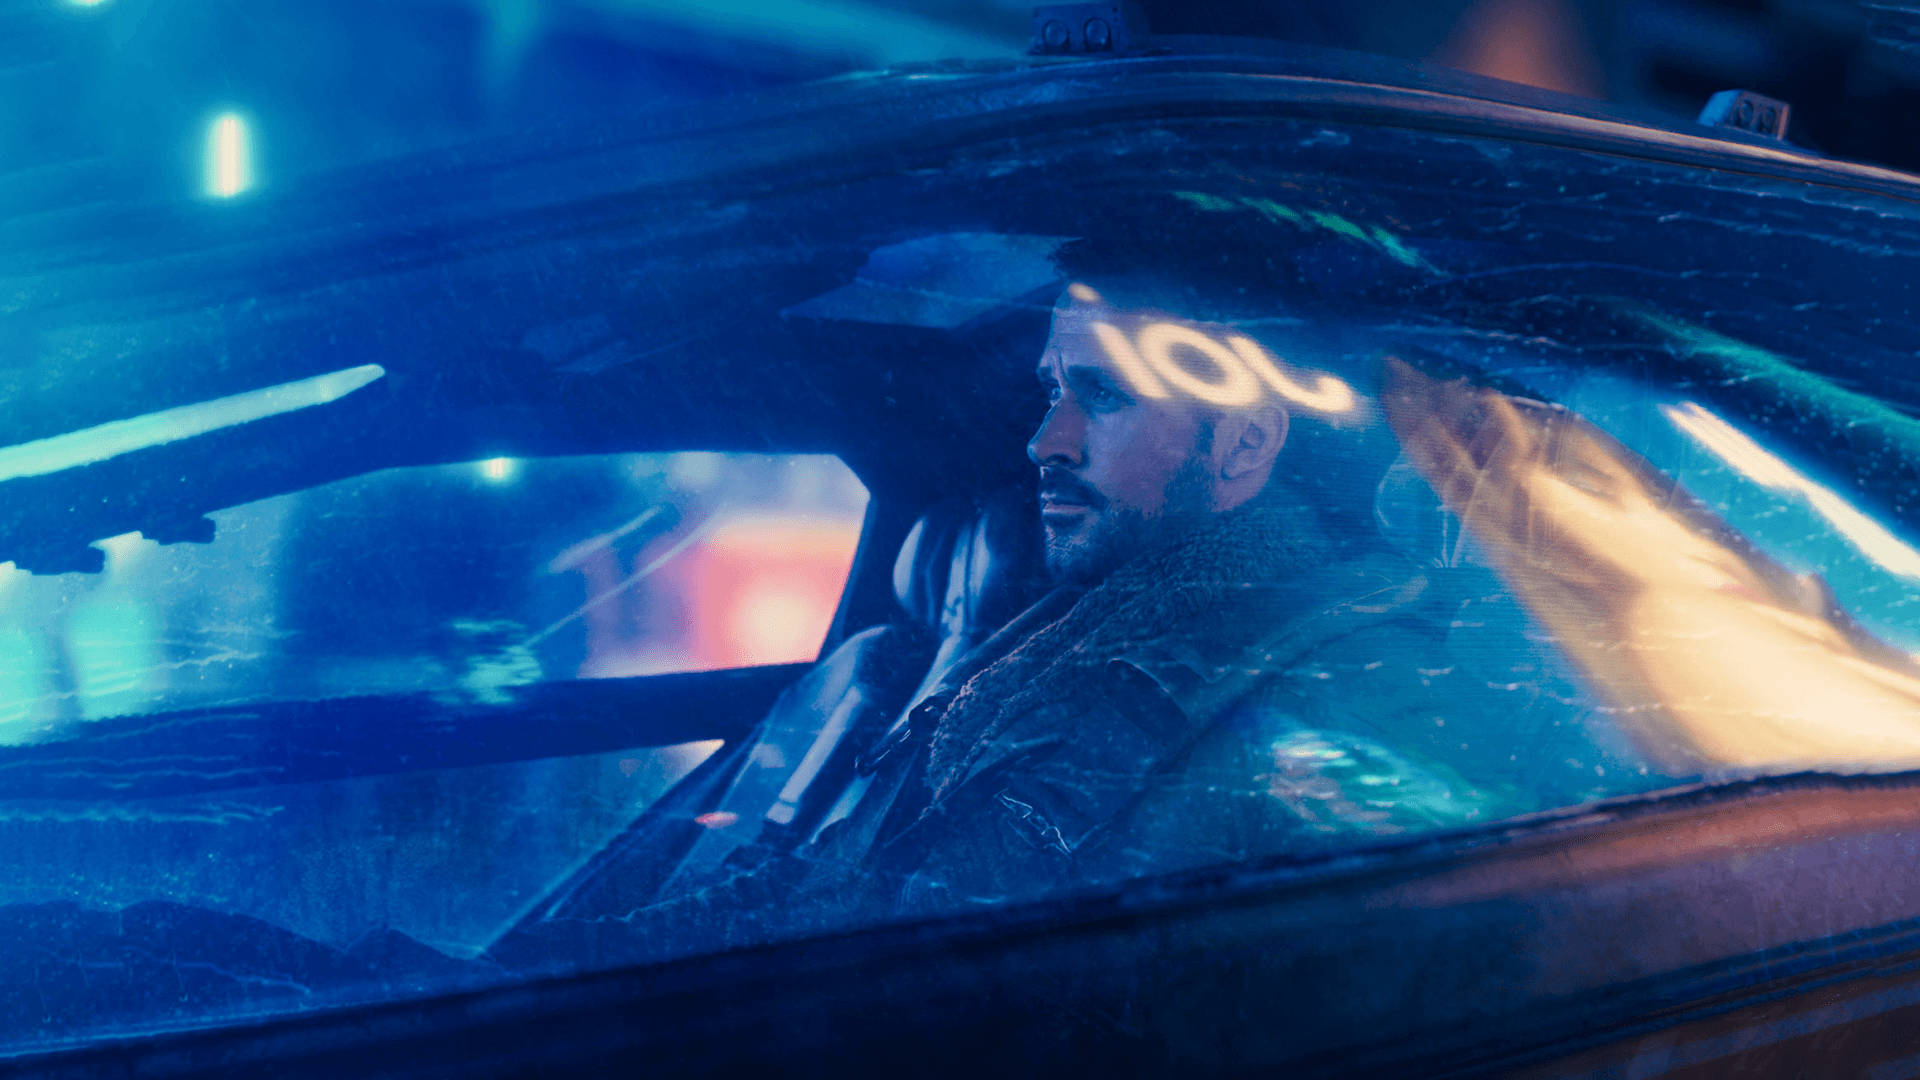 K navigates a dangerous future in Blade Runner 2049 Wallpaper